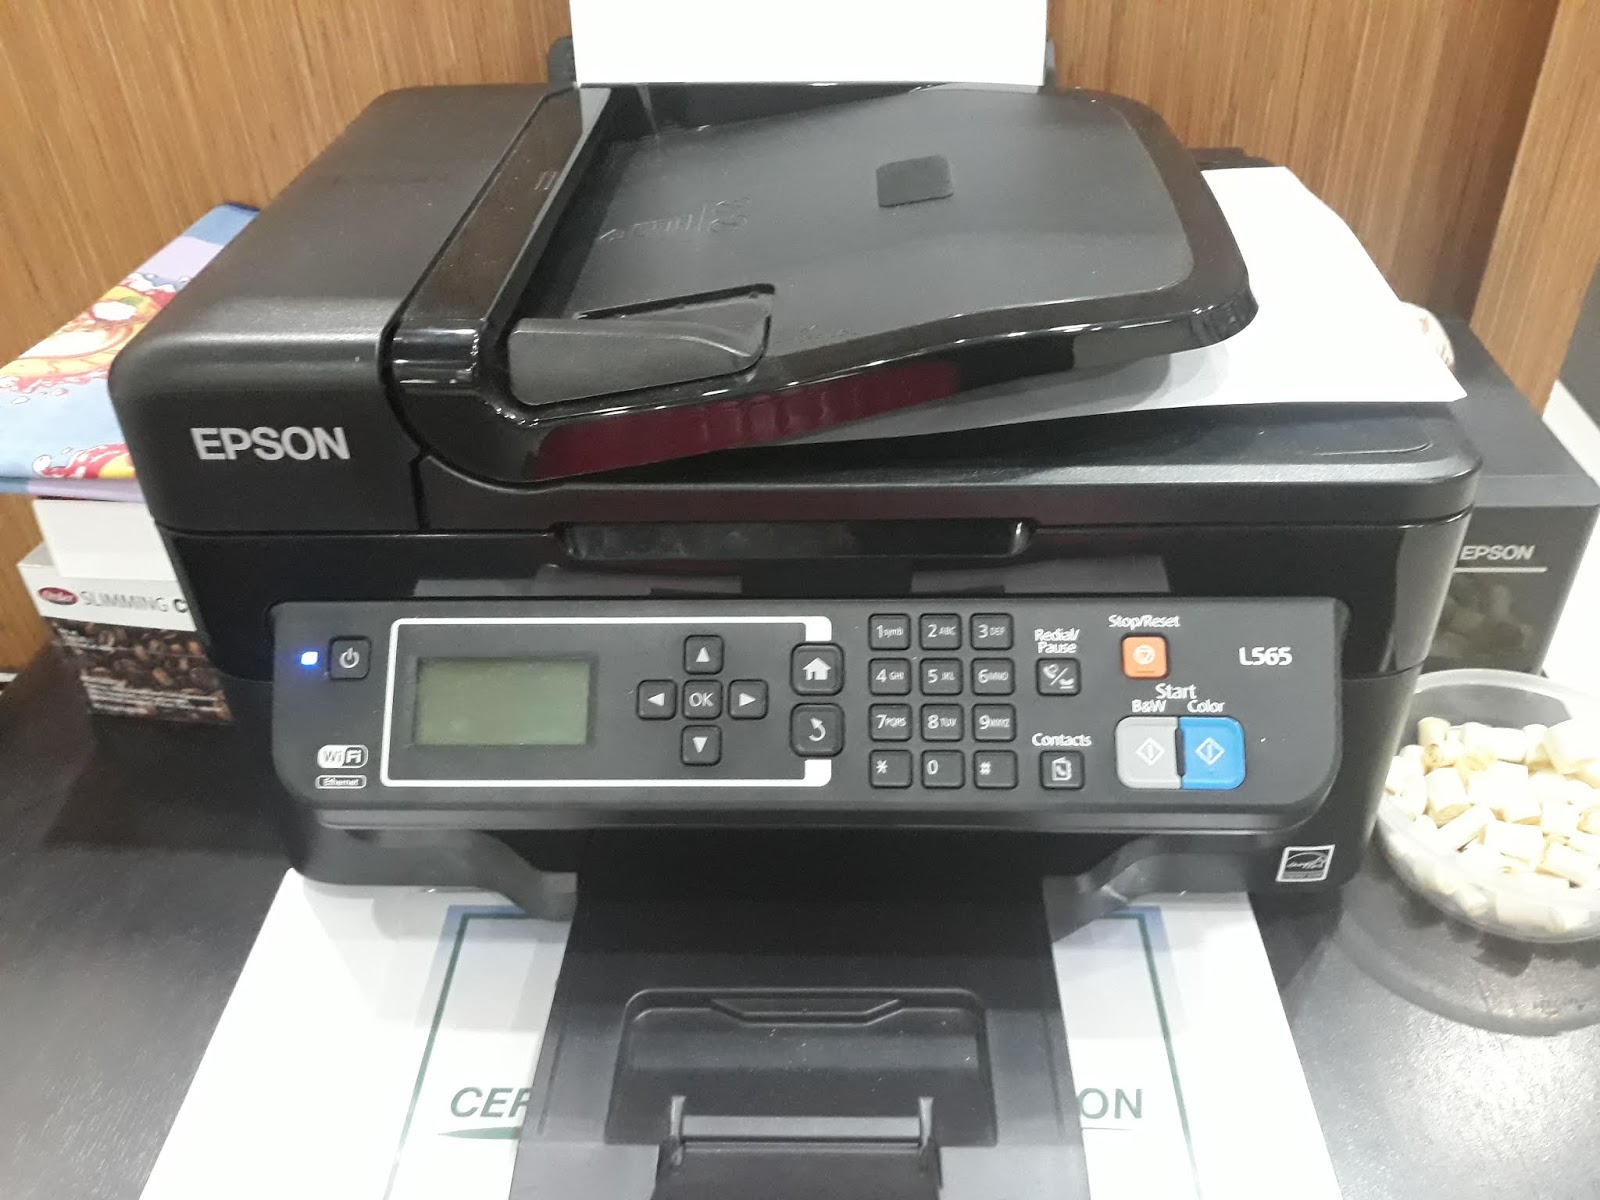 Epson series. Epson m200 Printer Driver. Epson m200 Driver. Epson m205 skachat Driver. Canon m200 Printer Driver.